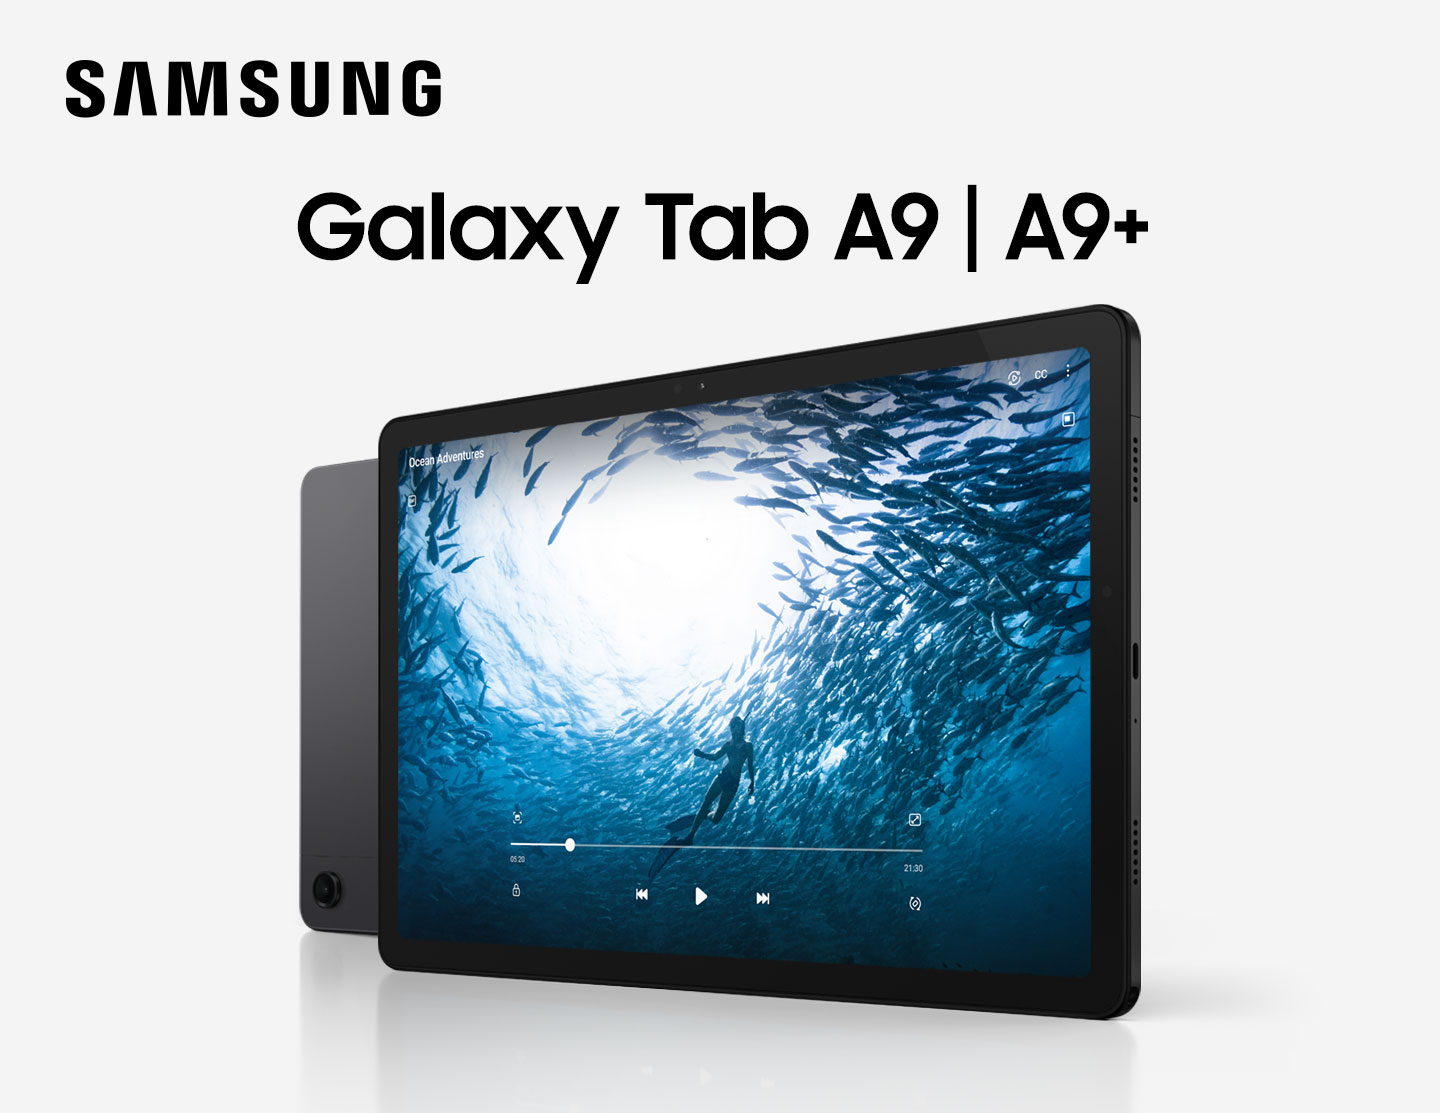 Dwa urządzenia Galaxy Tab A9+ są ustawione w poziomej linii. Jedno urządzenie stoi tyłem, a jedno najbardziej z prawej pokazuje ekran. Od lewej do prawej, kolor urządzeń to Srebrny i Grafitowy, pozostałe są Granatowe. Urządzenie po prawej wyświetla wideo o tytule Ocean Adventures, człowiek pływa w oceanie, otoczony rybami. 